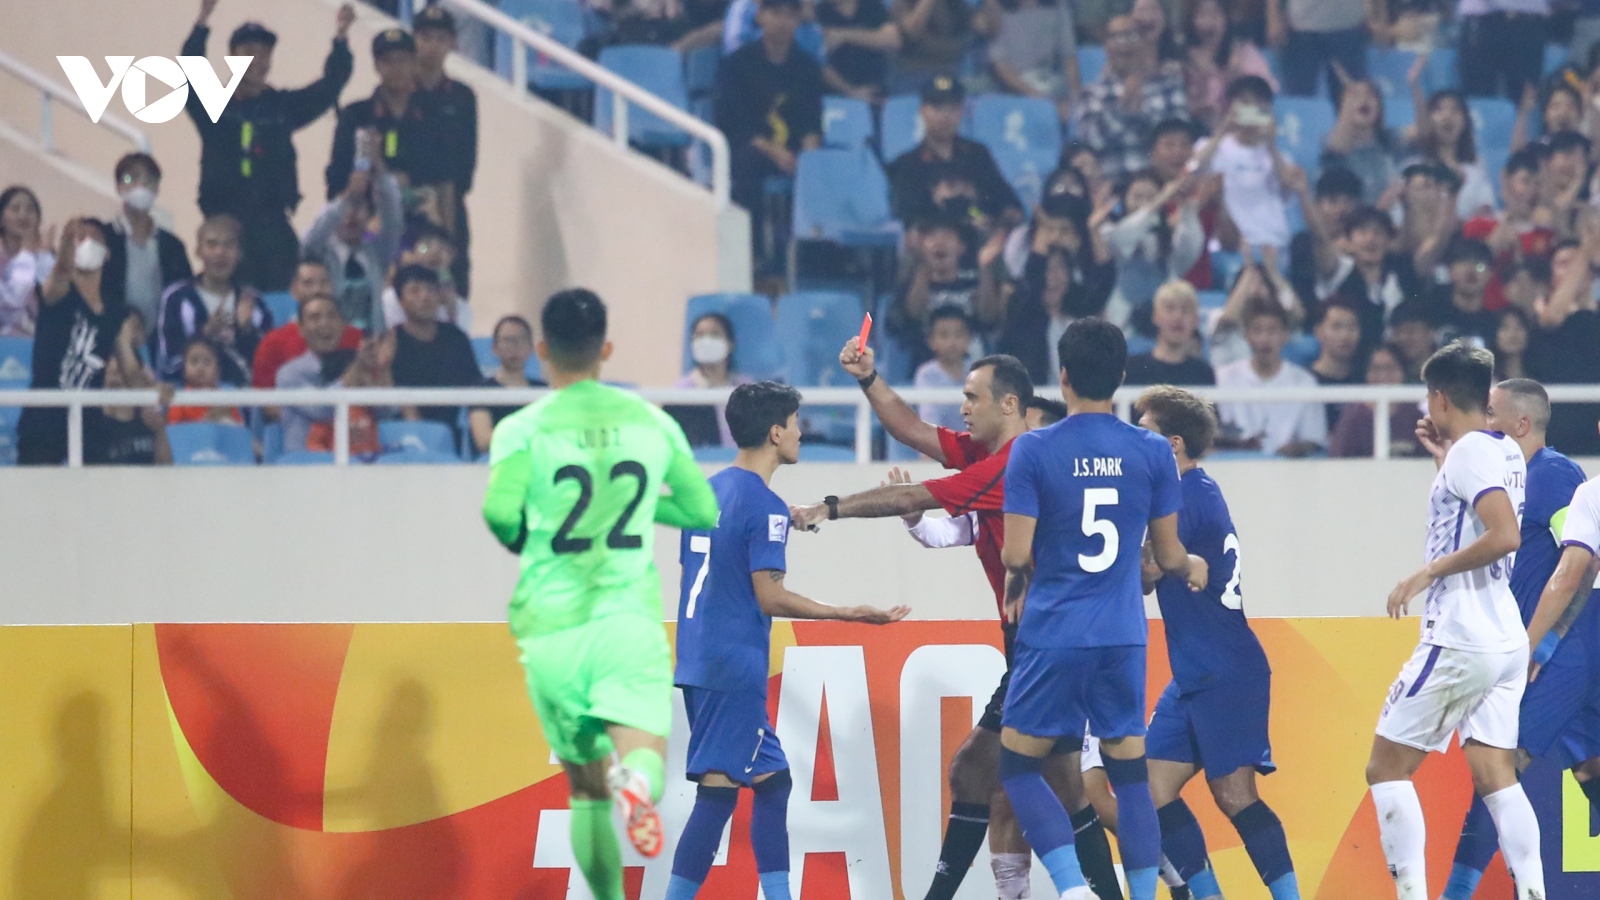 Cầu thủ Trung Quốc bị chỉ trích thậm tệ vì nhận thẻ đỏ trận Hà Nội FC - Wuhan